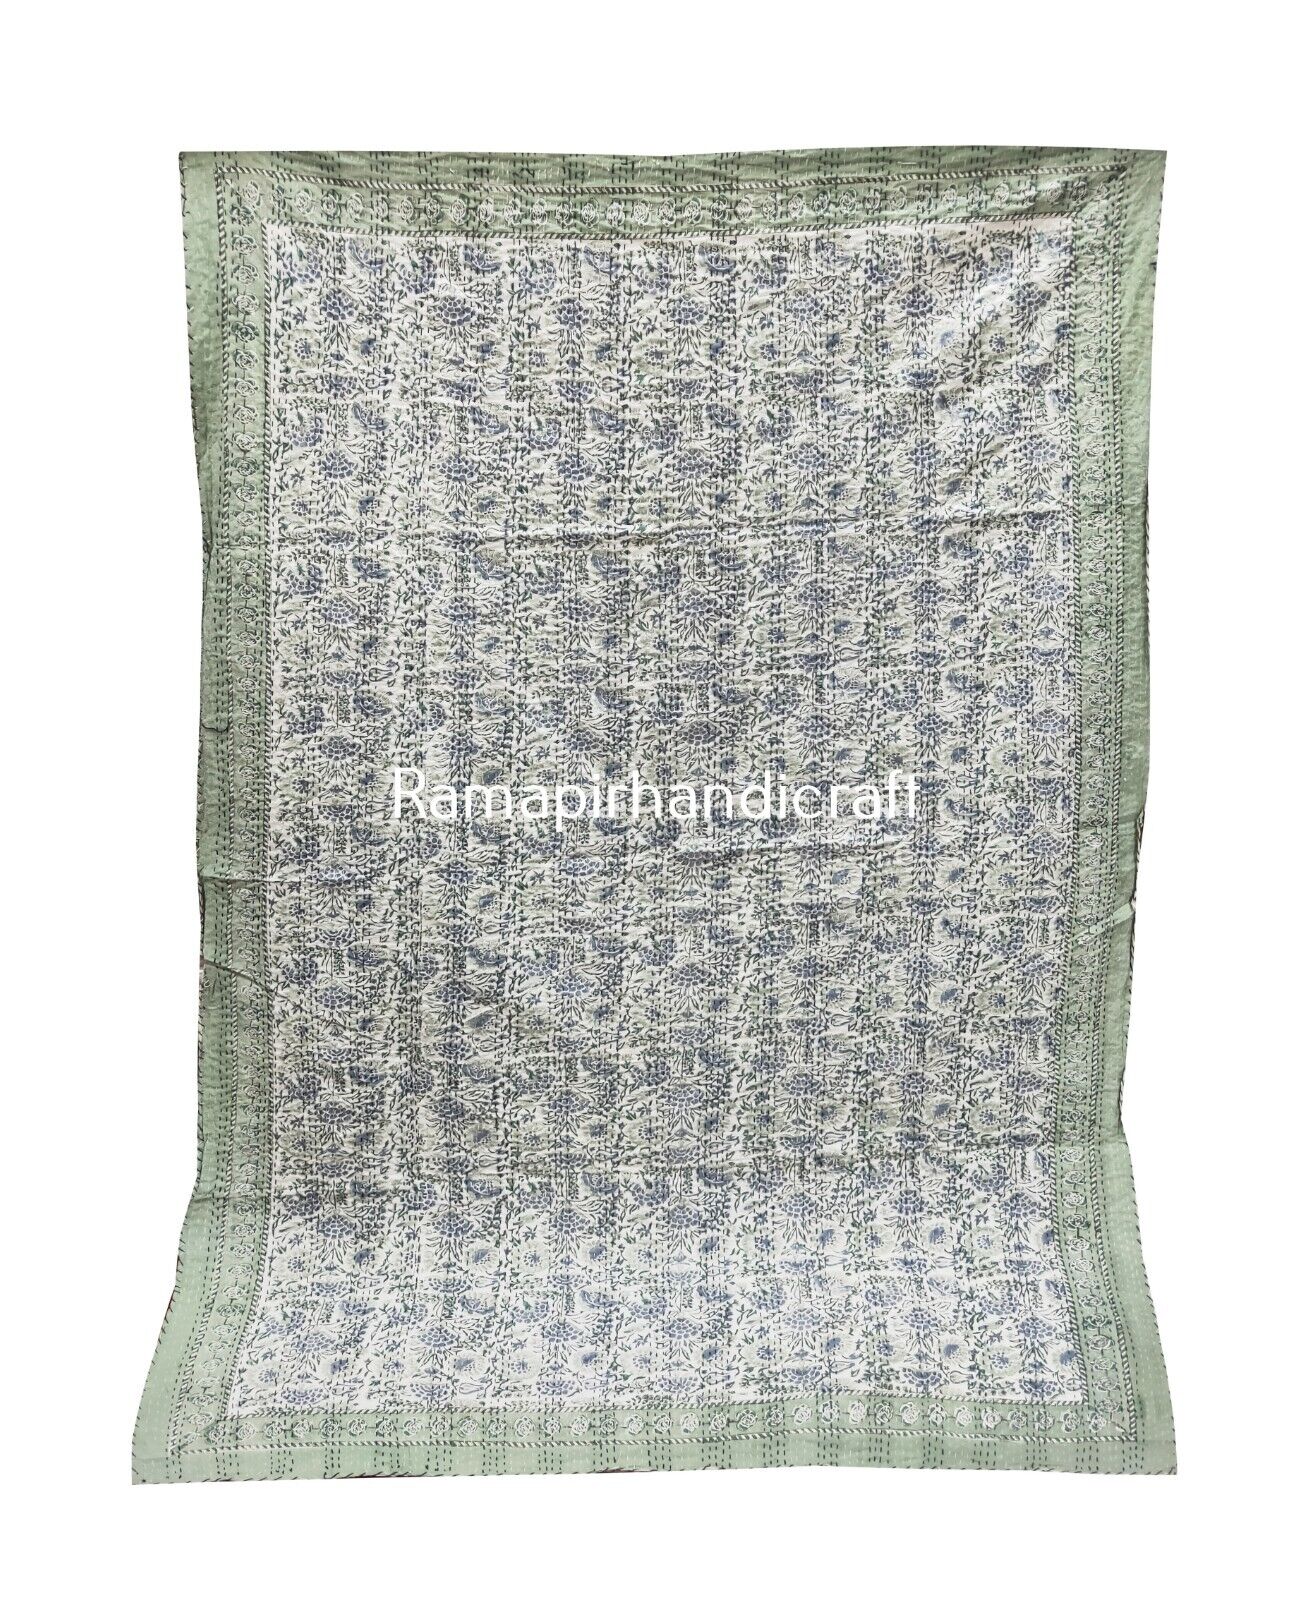 Indian Vinatge Cotton Kantha Quilt Throw Floral Print Bedspread Blanket TwinSize